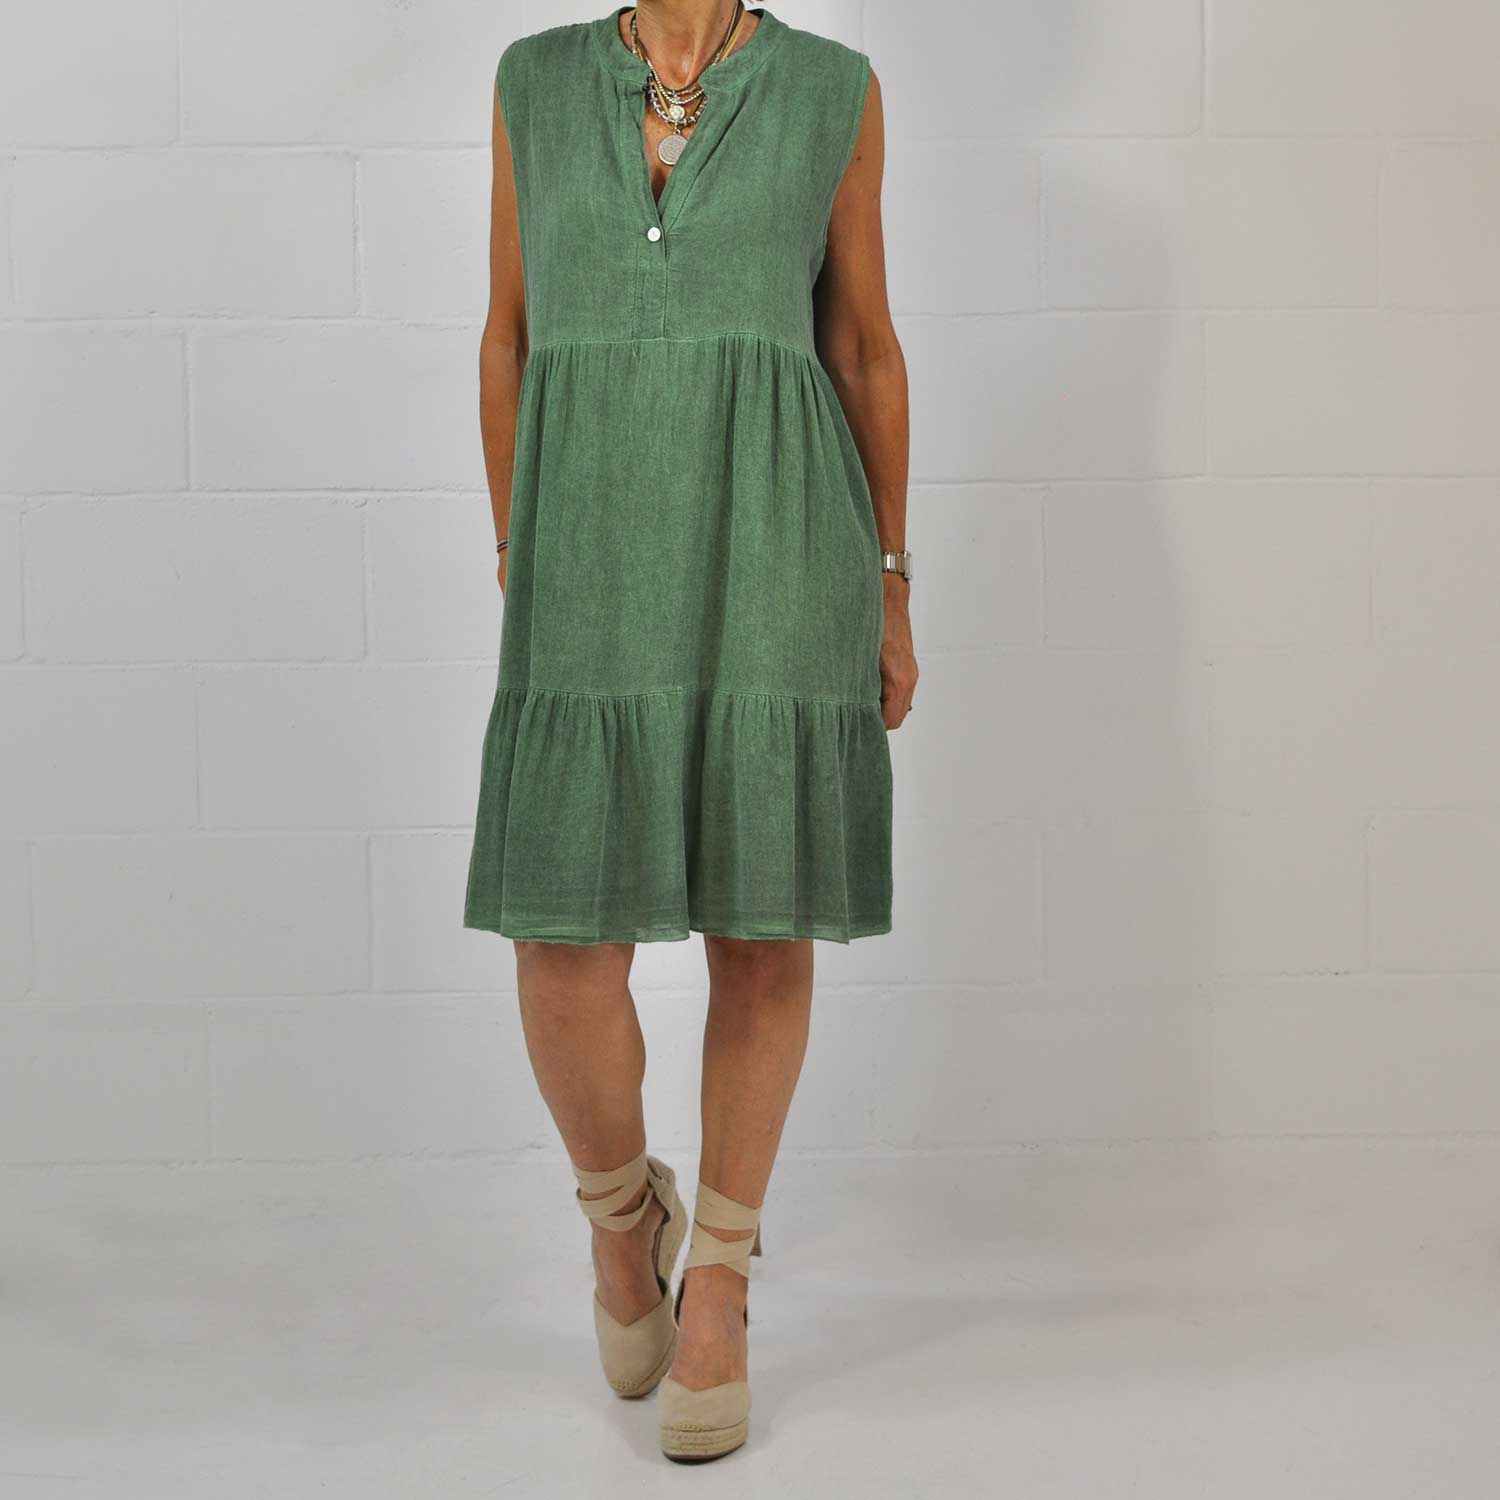 Green ruffles cotton dress